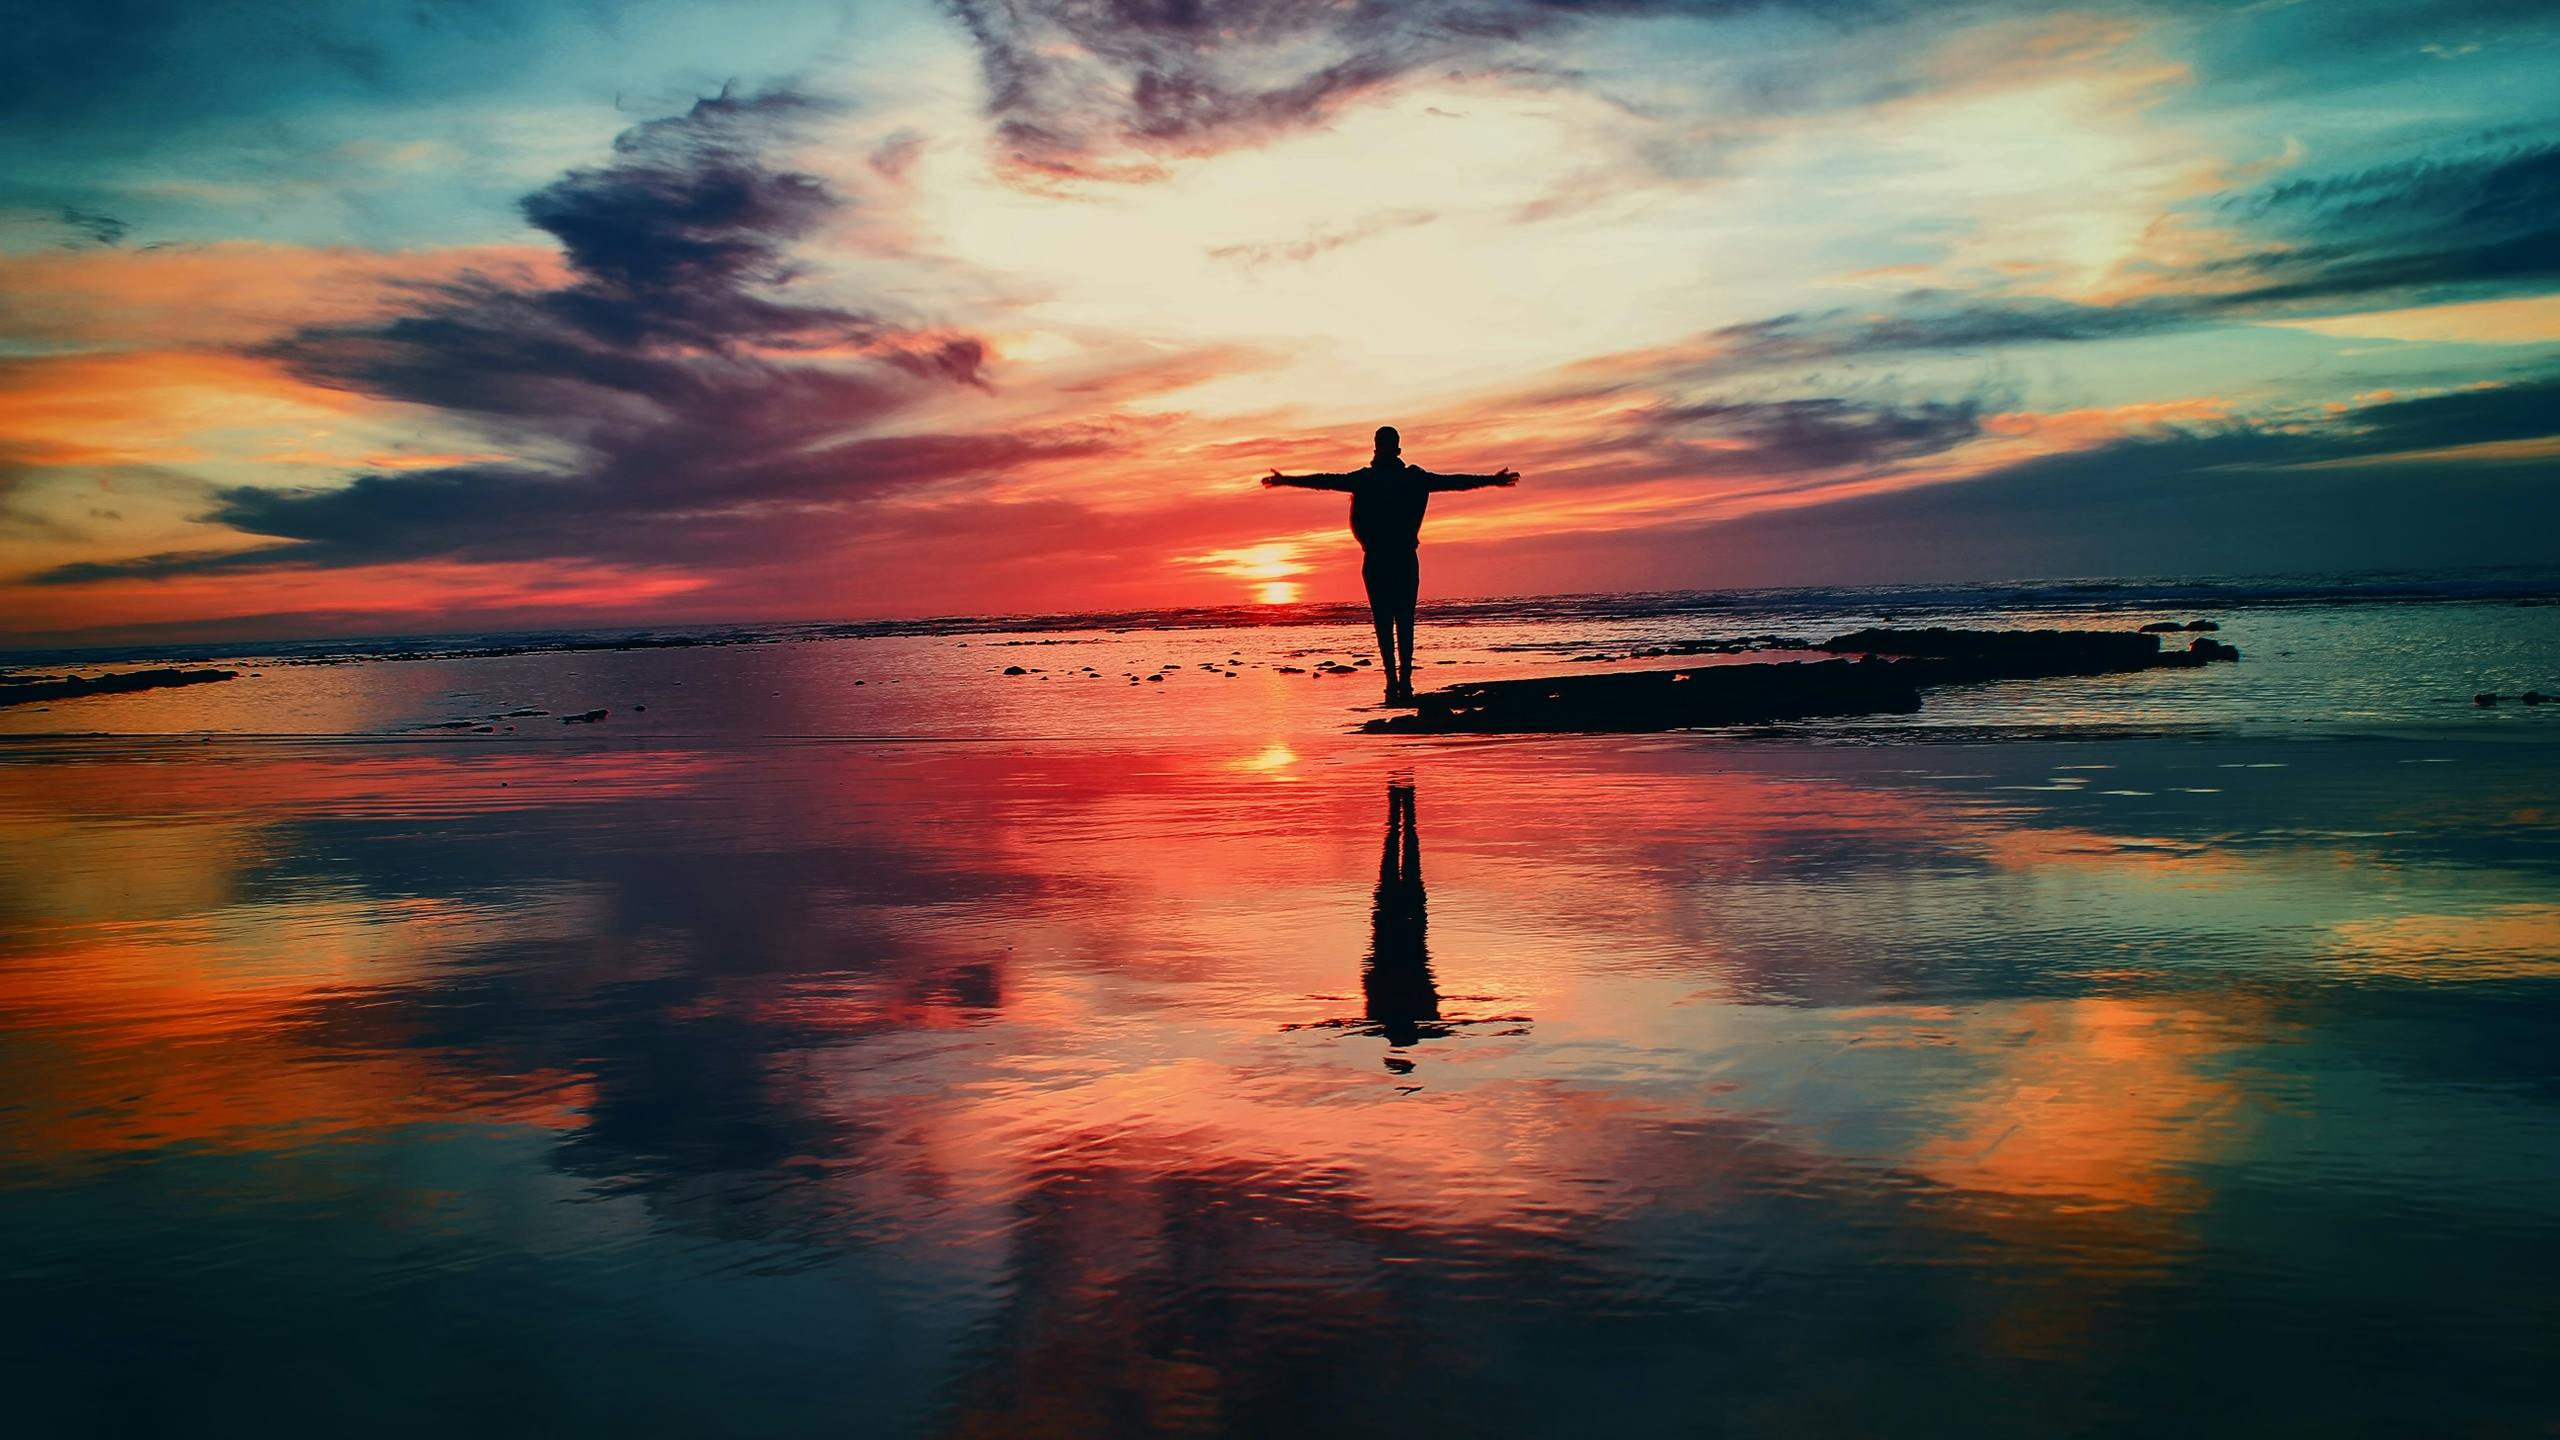 Man standing near ocean during sunset